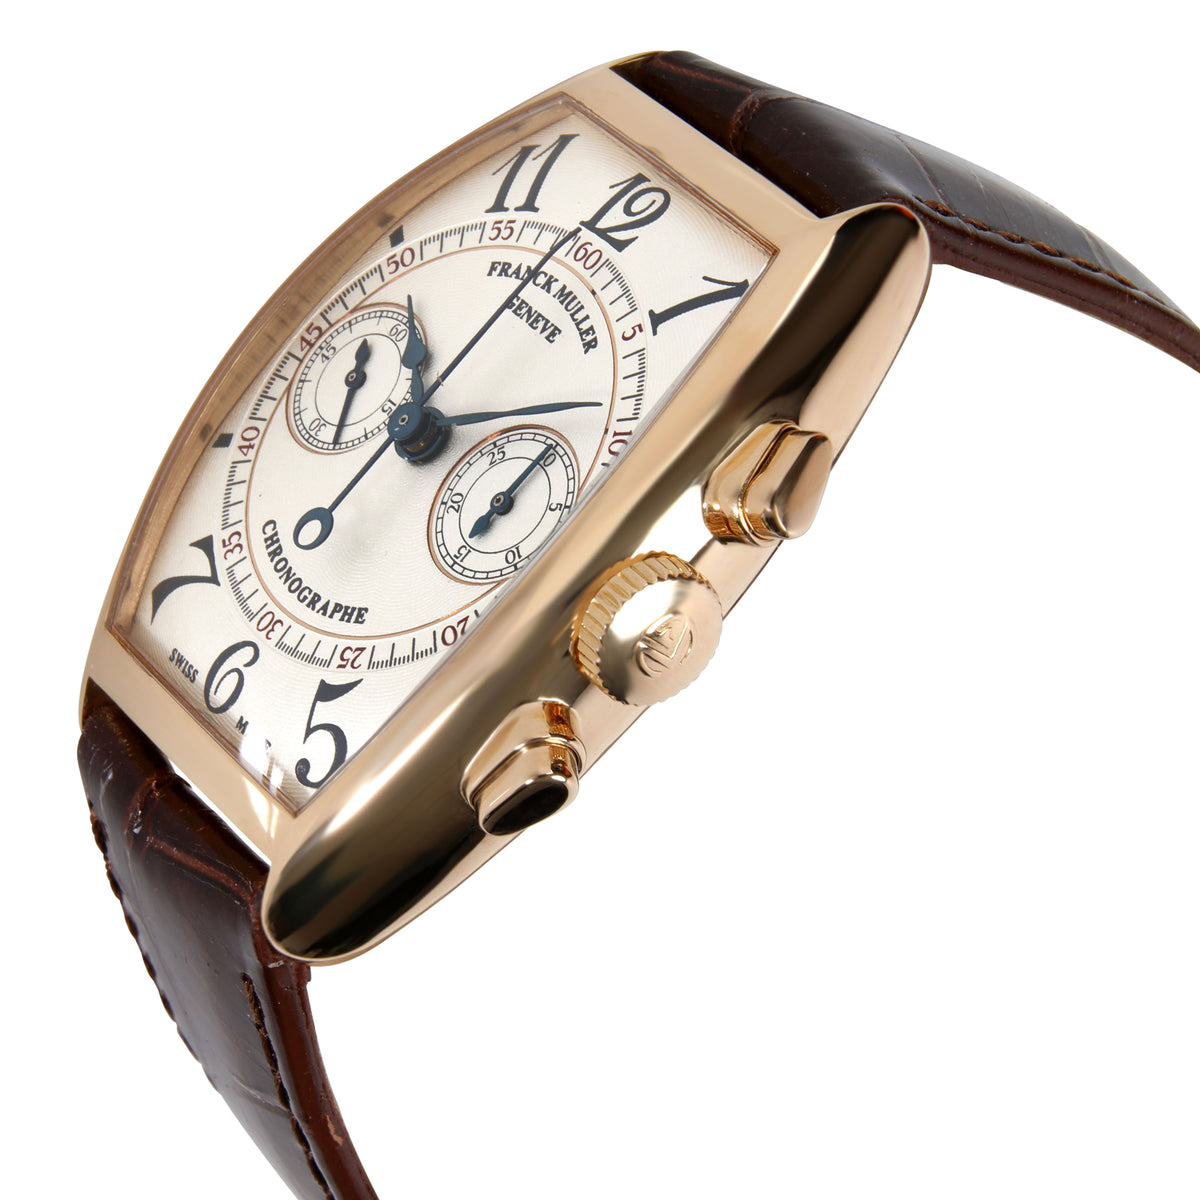 Franck Muller Casablanca 5850 CC Men's Watch in 18kt Rose Gold